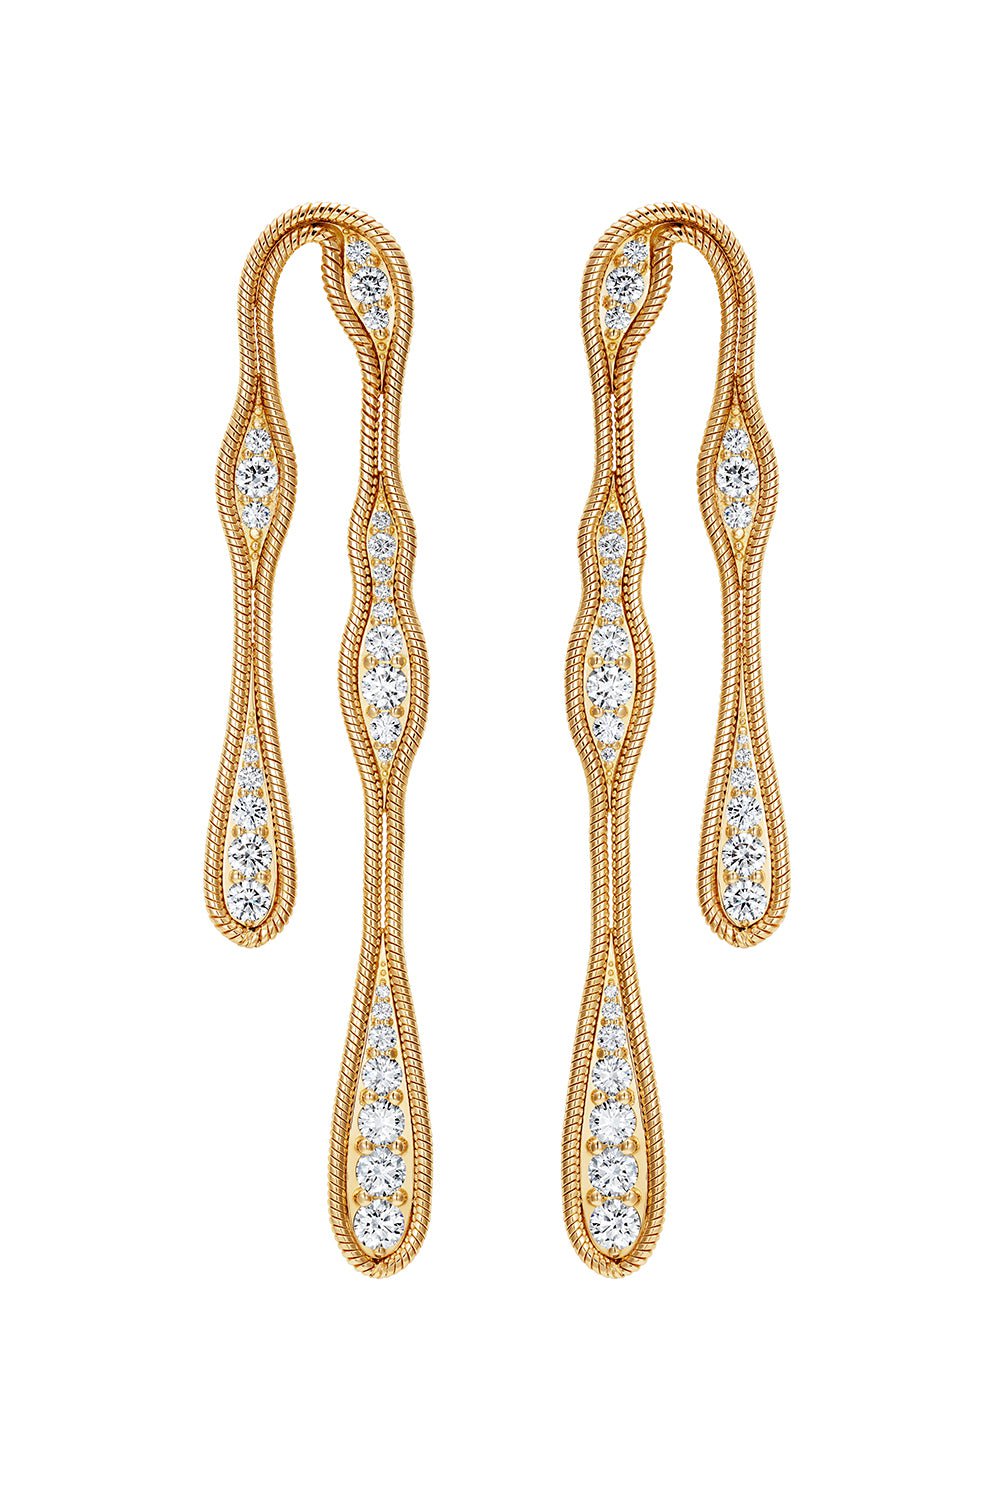 FERNANDO JORGE-Fluid Diamond Earrings-YELLOW GOLD